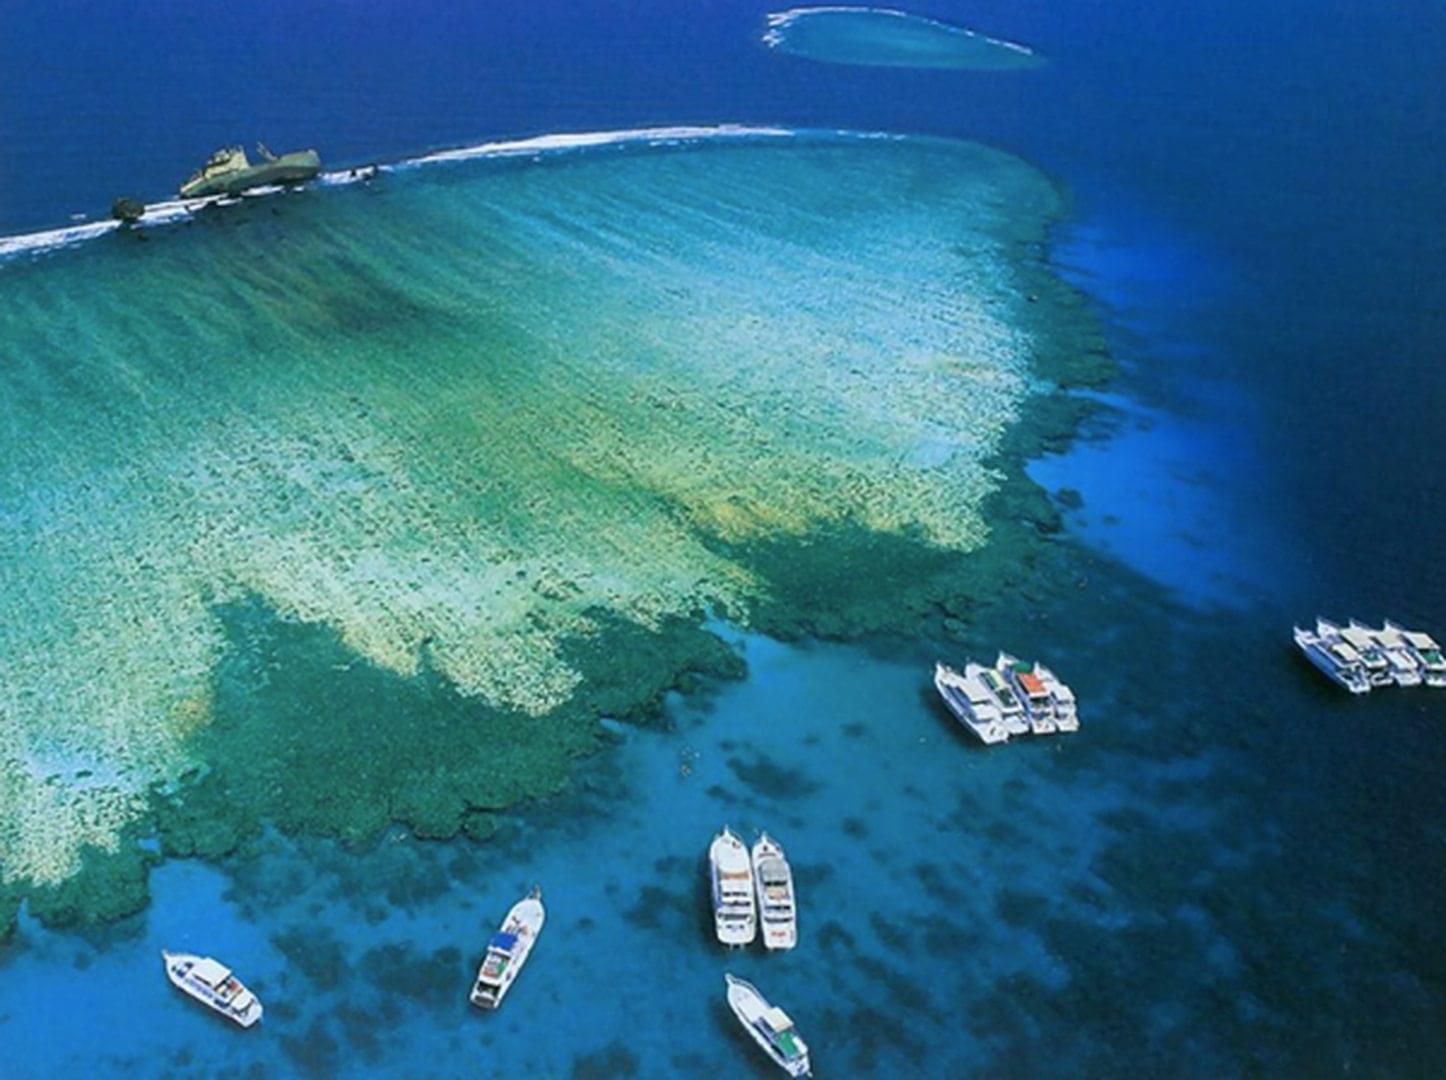 Tiran Island in Sharm El Sheikh.